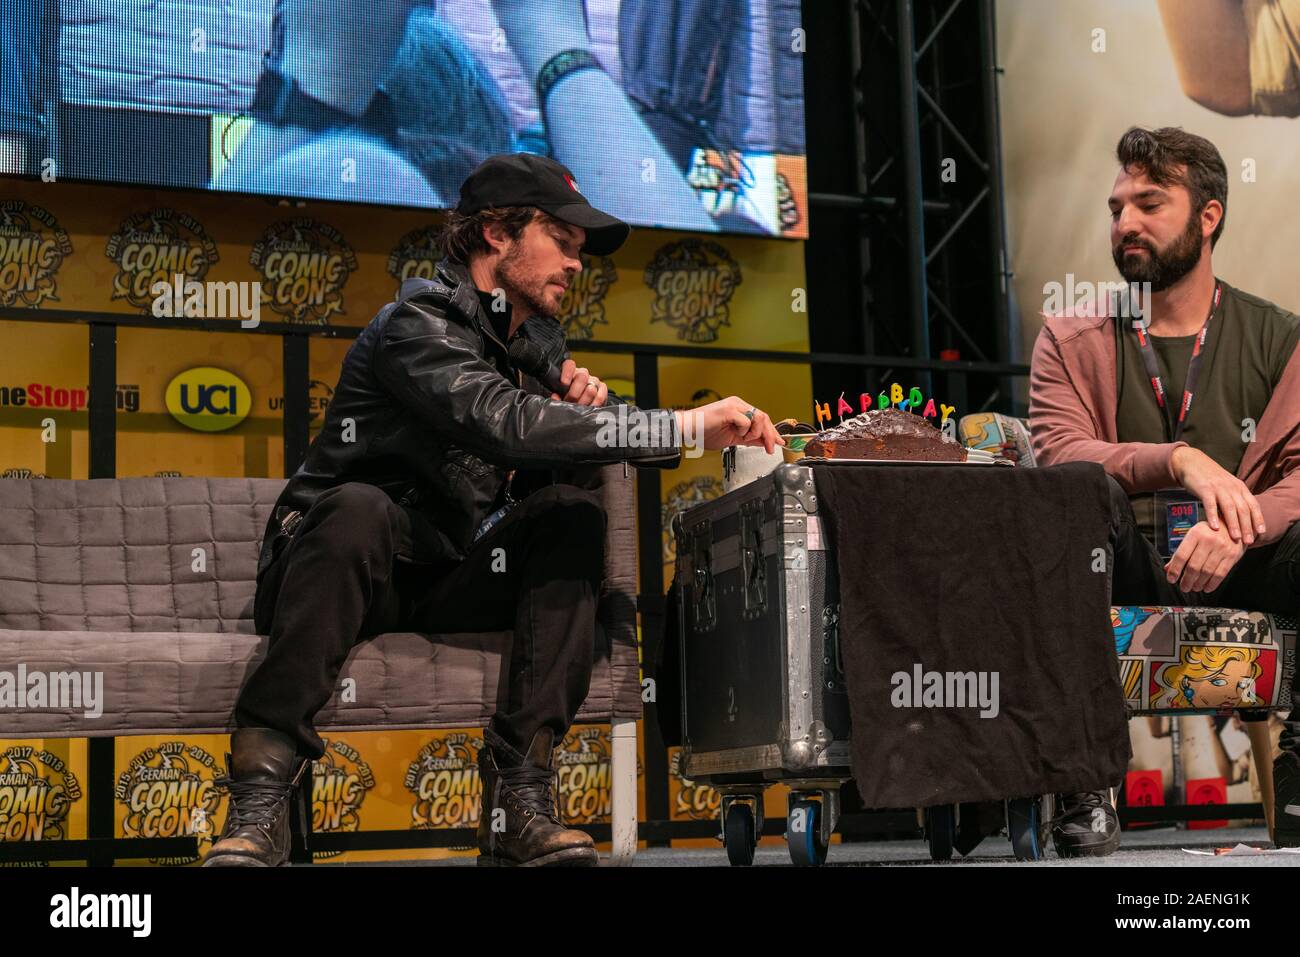 DORTMUND, Germania - 8 Dicembre 2019: Ian Somerhalder (*1978, attore americano, modello e direttore - Vampire Diaries, perso) parla delle sue esperienze nell'industria cinematografica al comico tedesco Con Dortmund Foto Stock